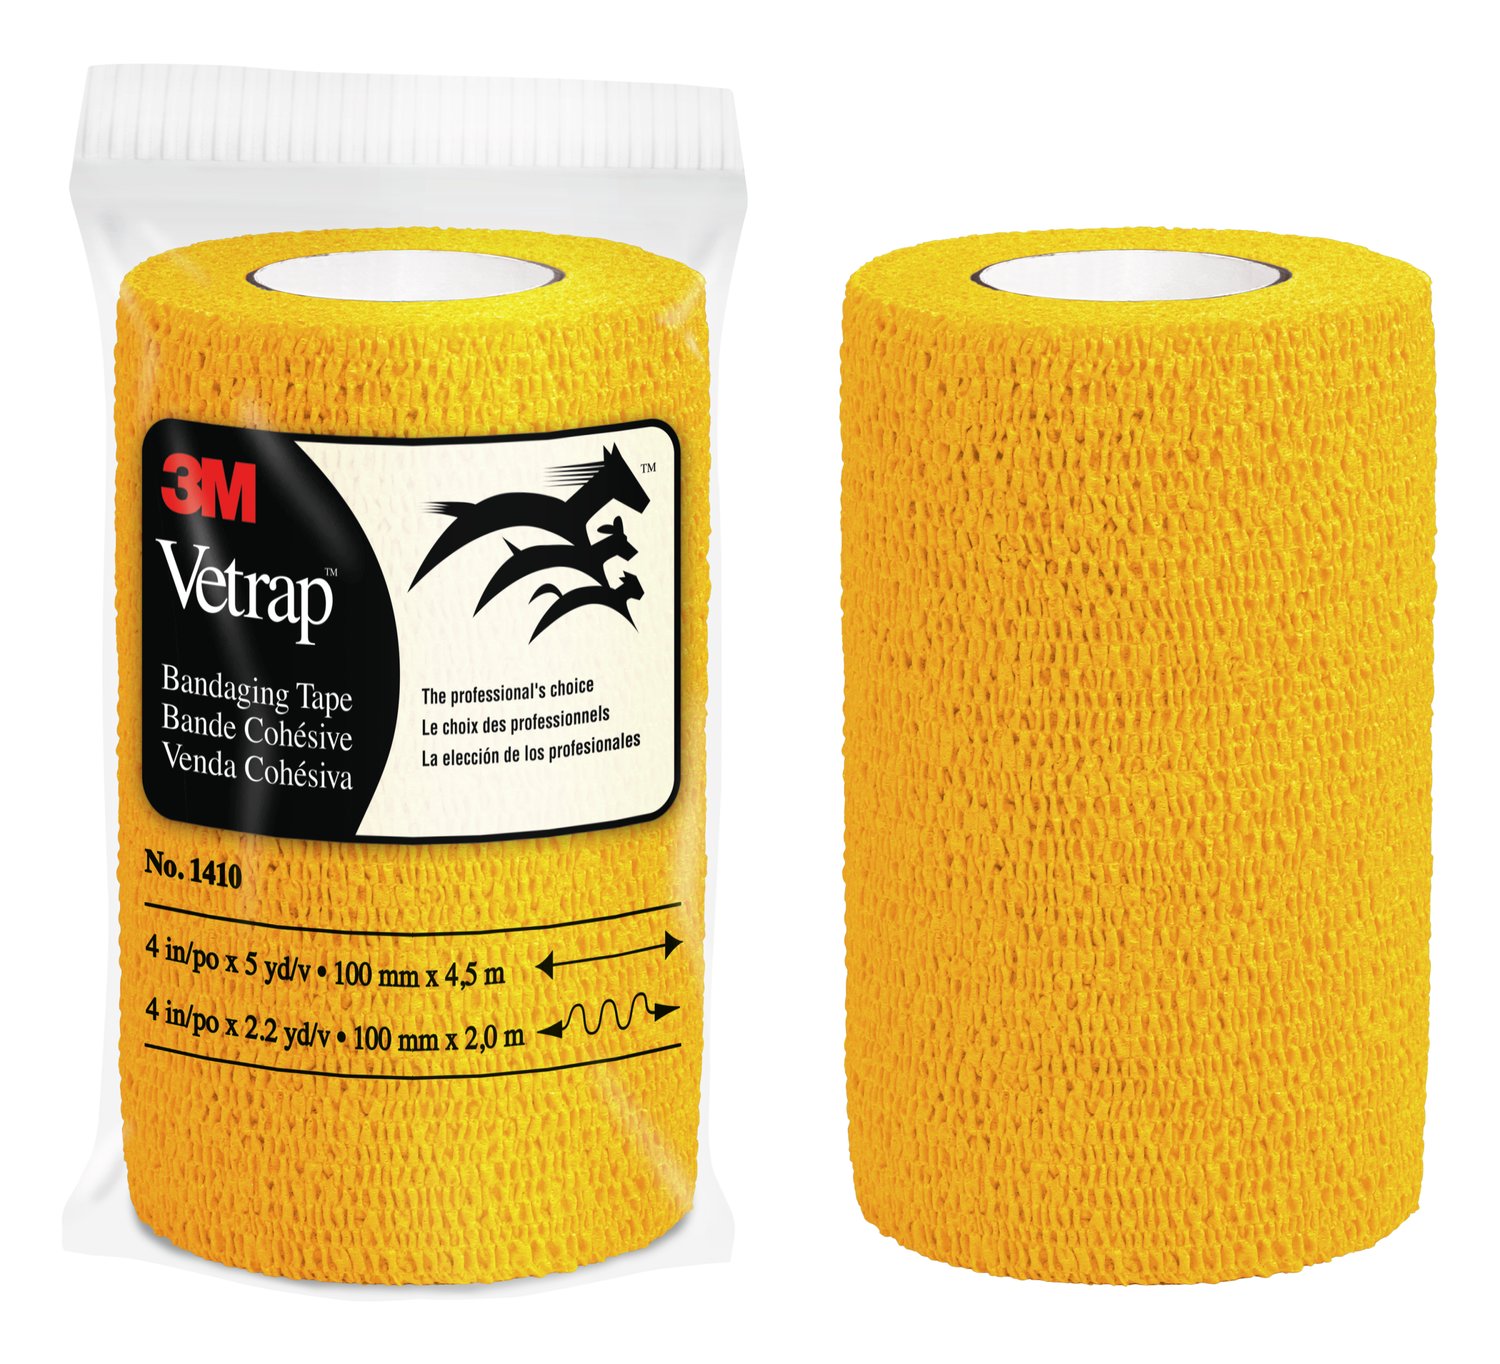 7000053654 - 3M Vetrap Bandaging Tape Bulk Pack, 1410GD Bulk Gold